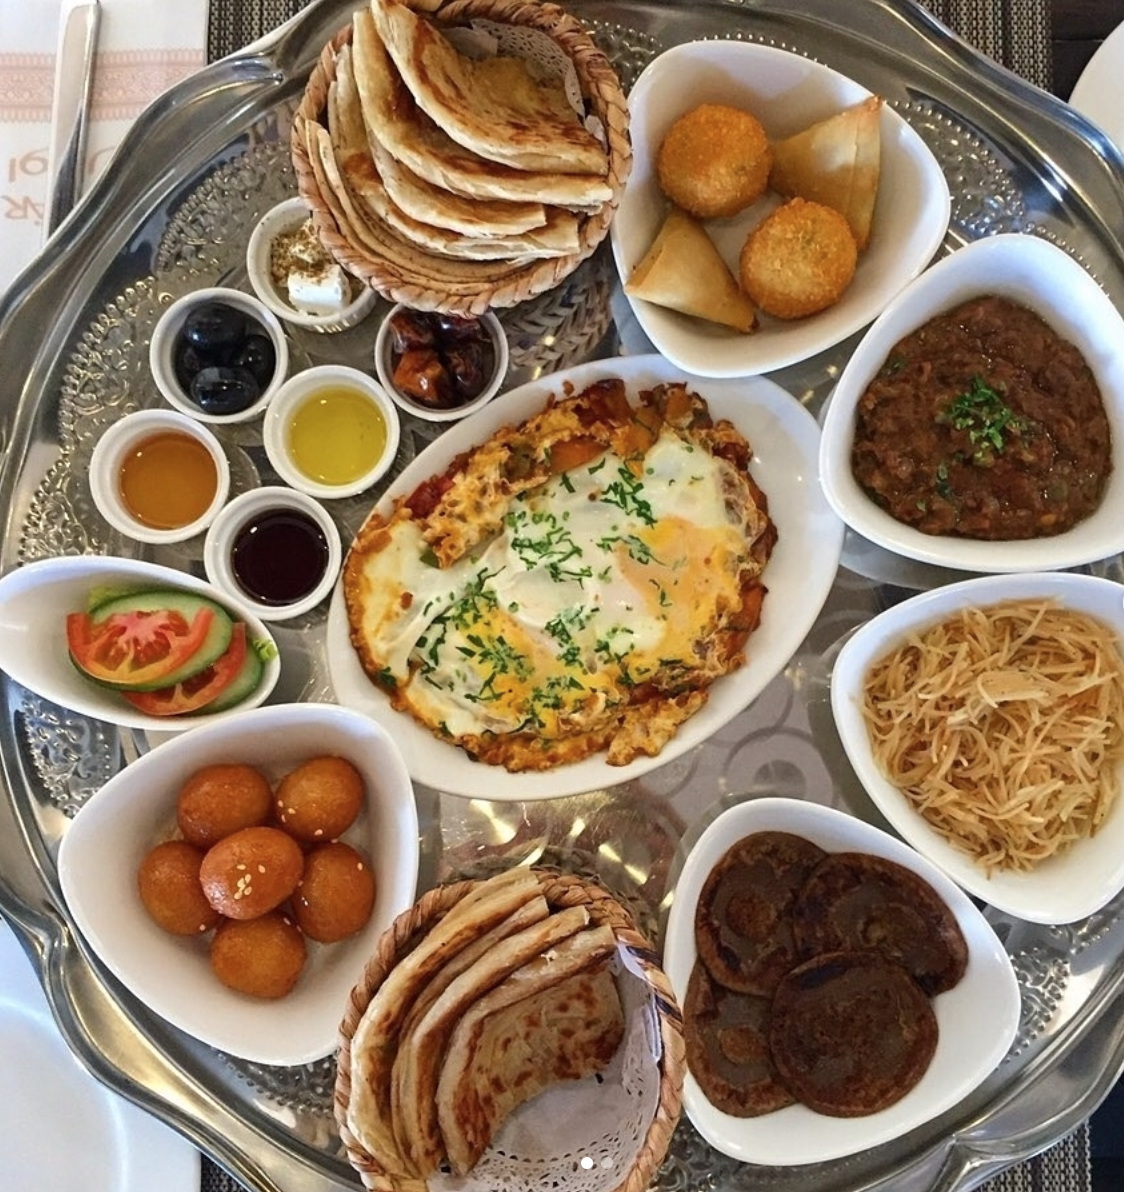 Ubhar Restaurant in Muscat, Oman